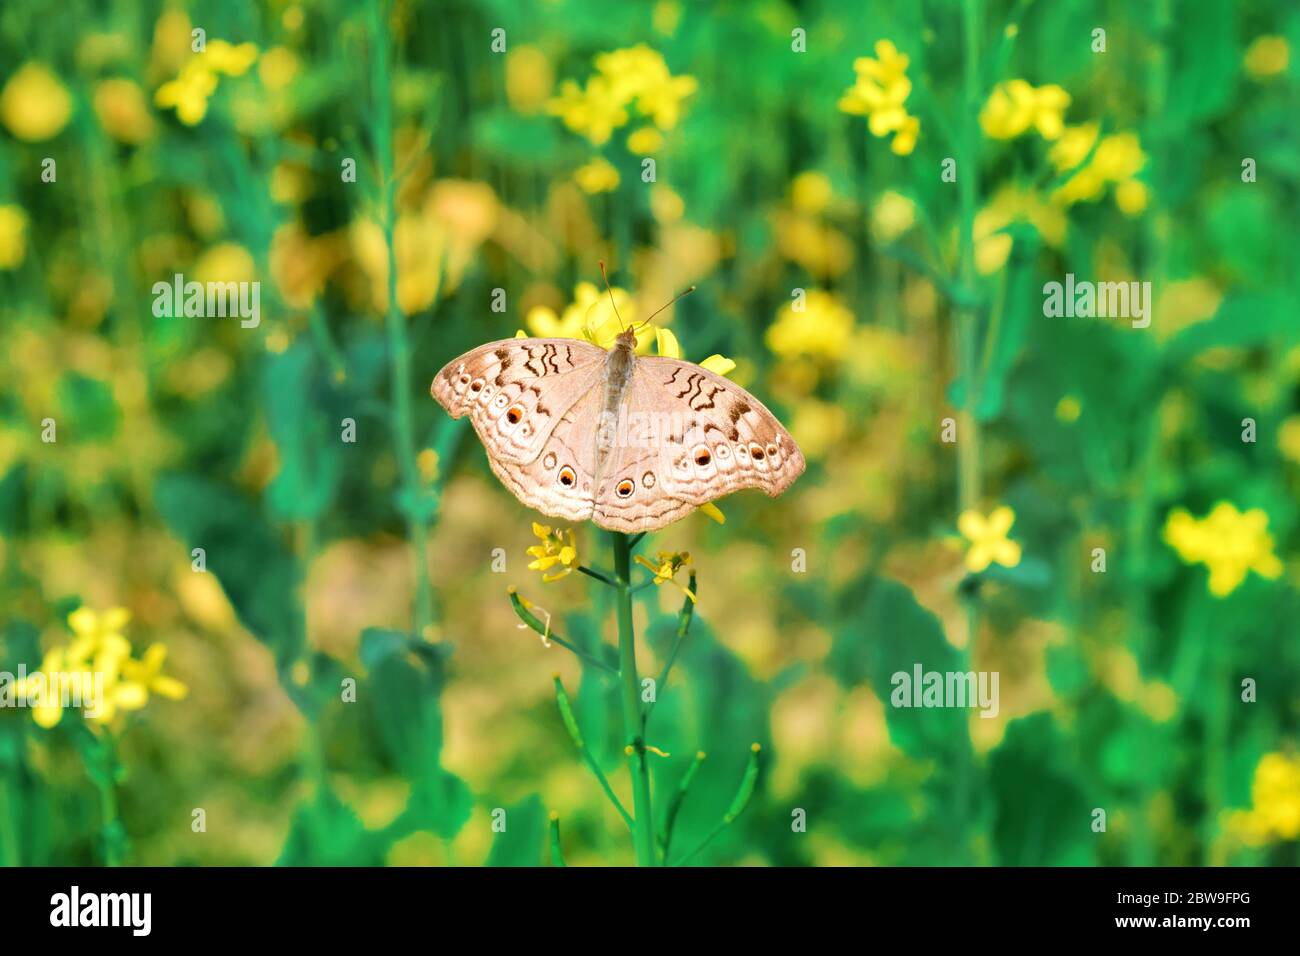 Mariposa gris pansy en la flor de mostaza Foto de stock